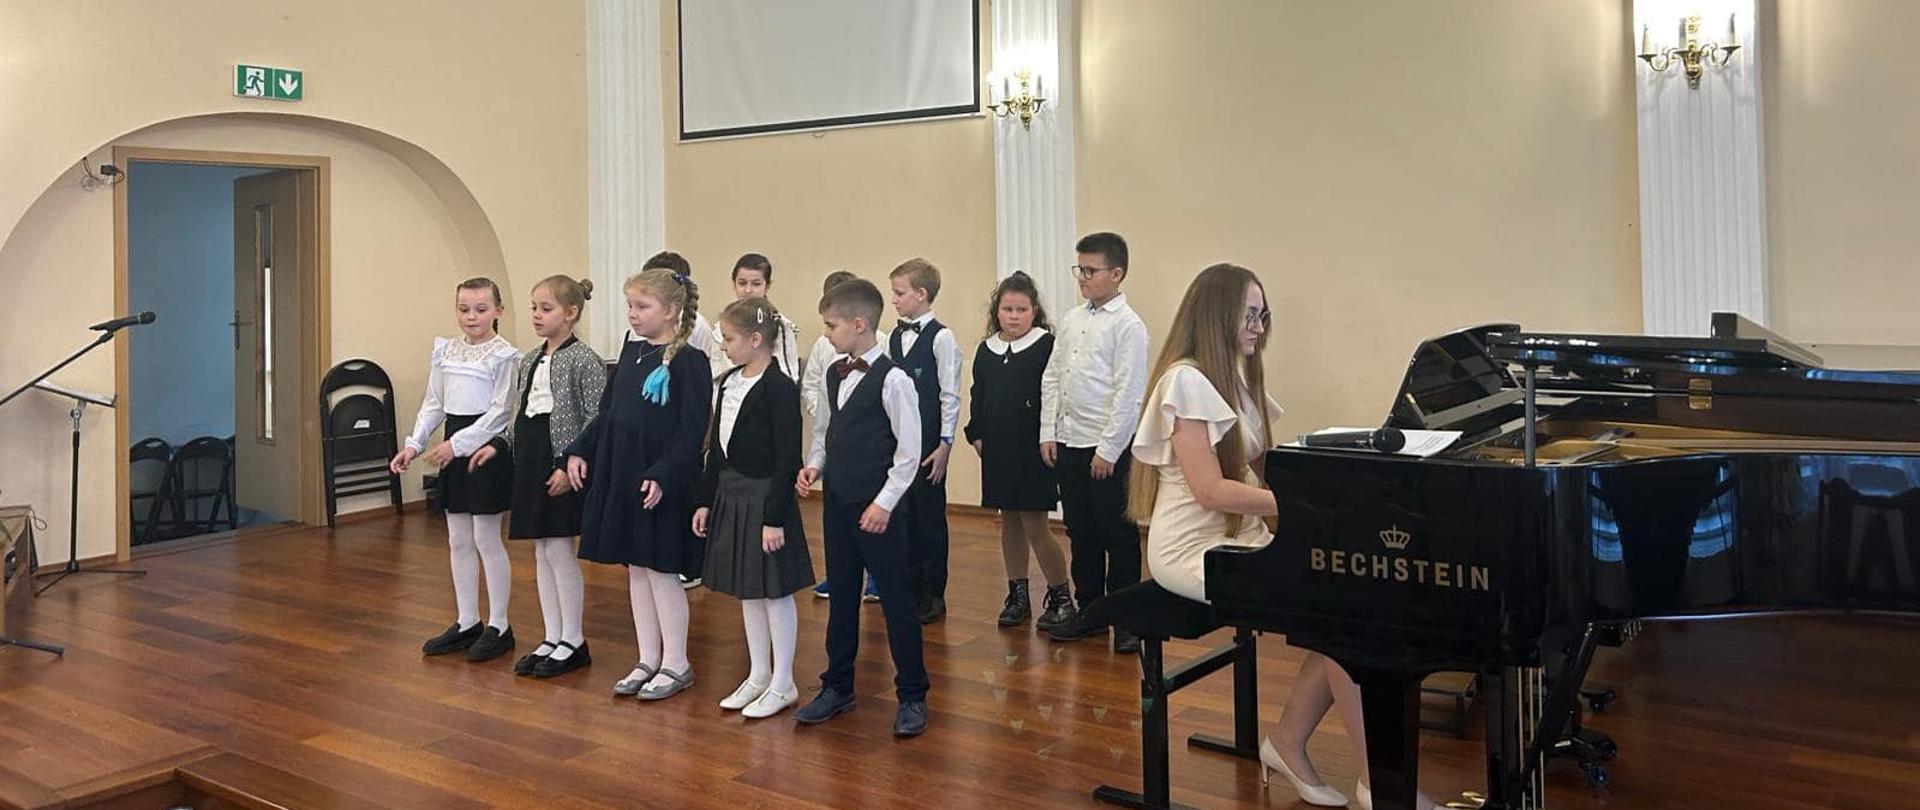 Uczniowie klasy II/6 na scenie auli podczas popisu wraz z nauczycielką grająca na fortepianie.